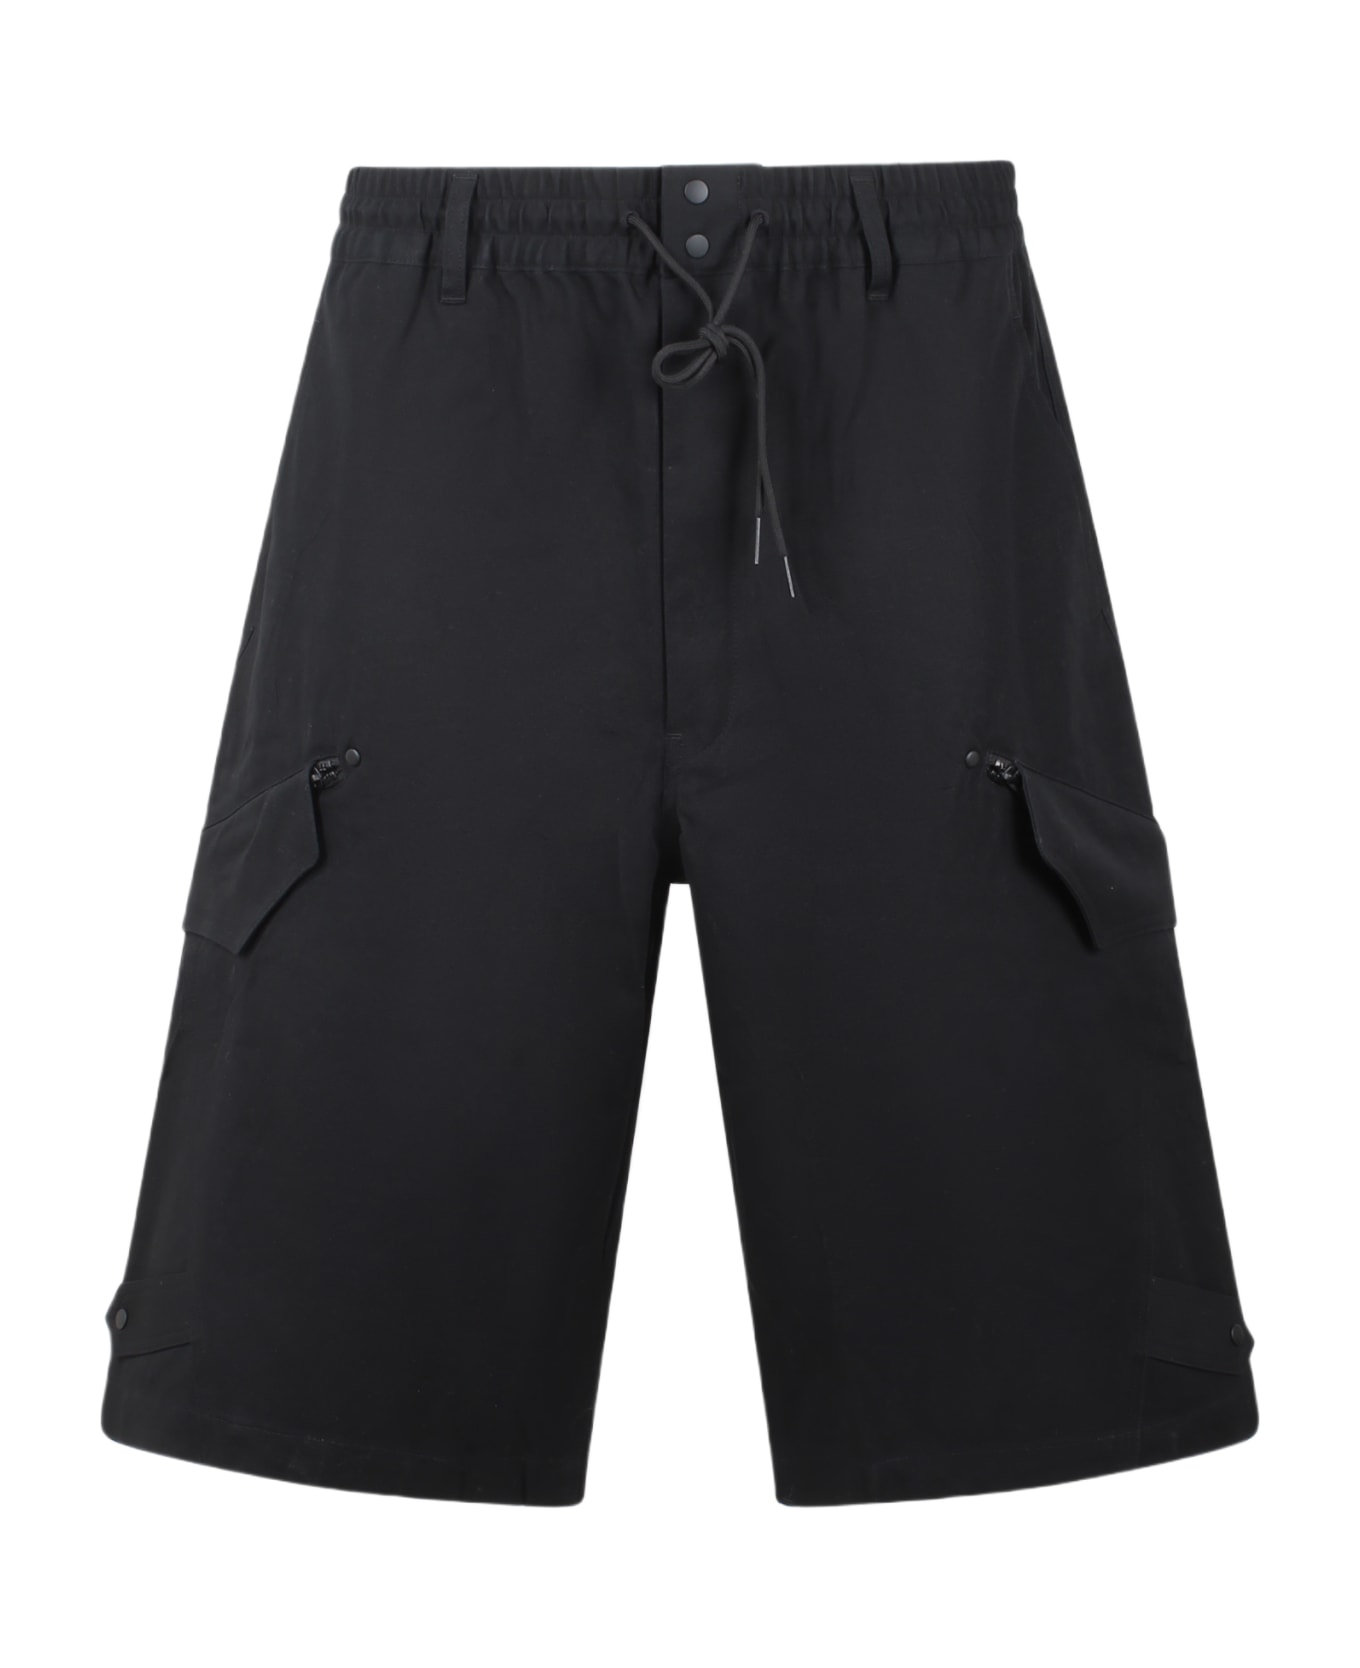 Y-3 Wrkwr Shorts - Black